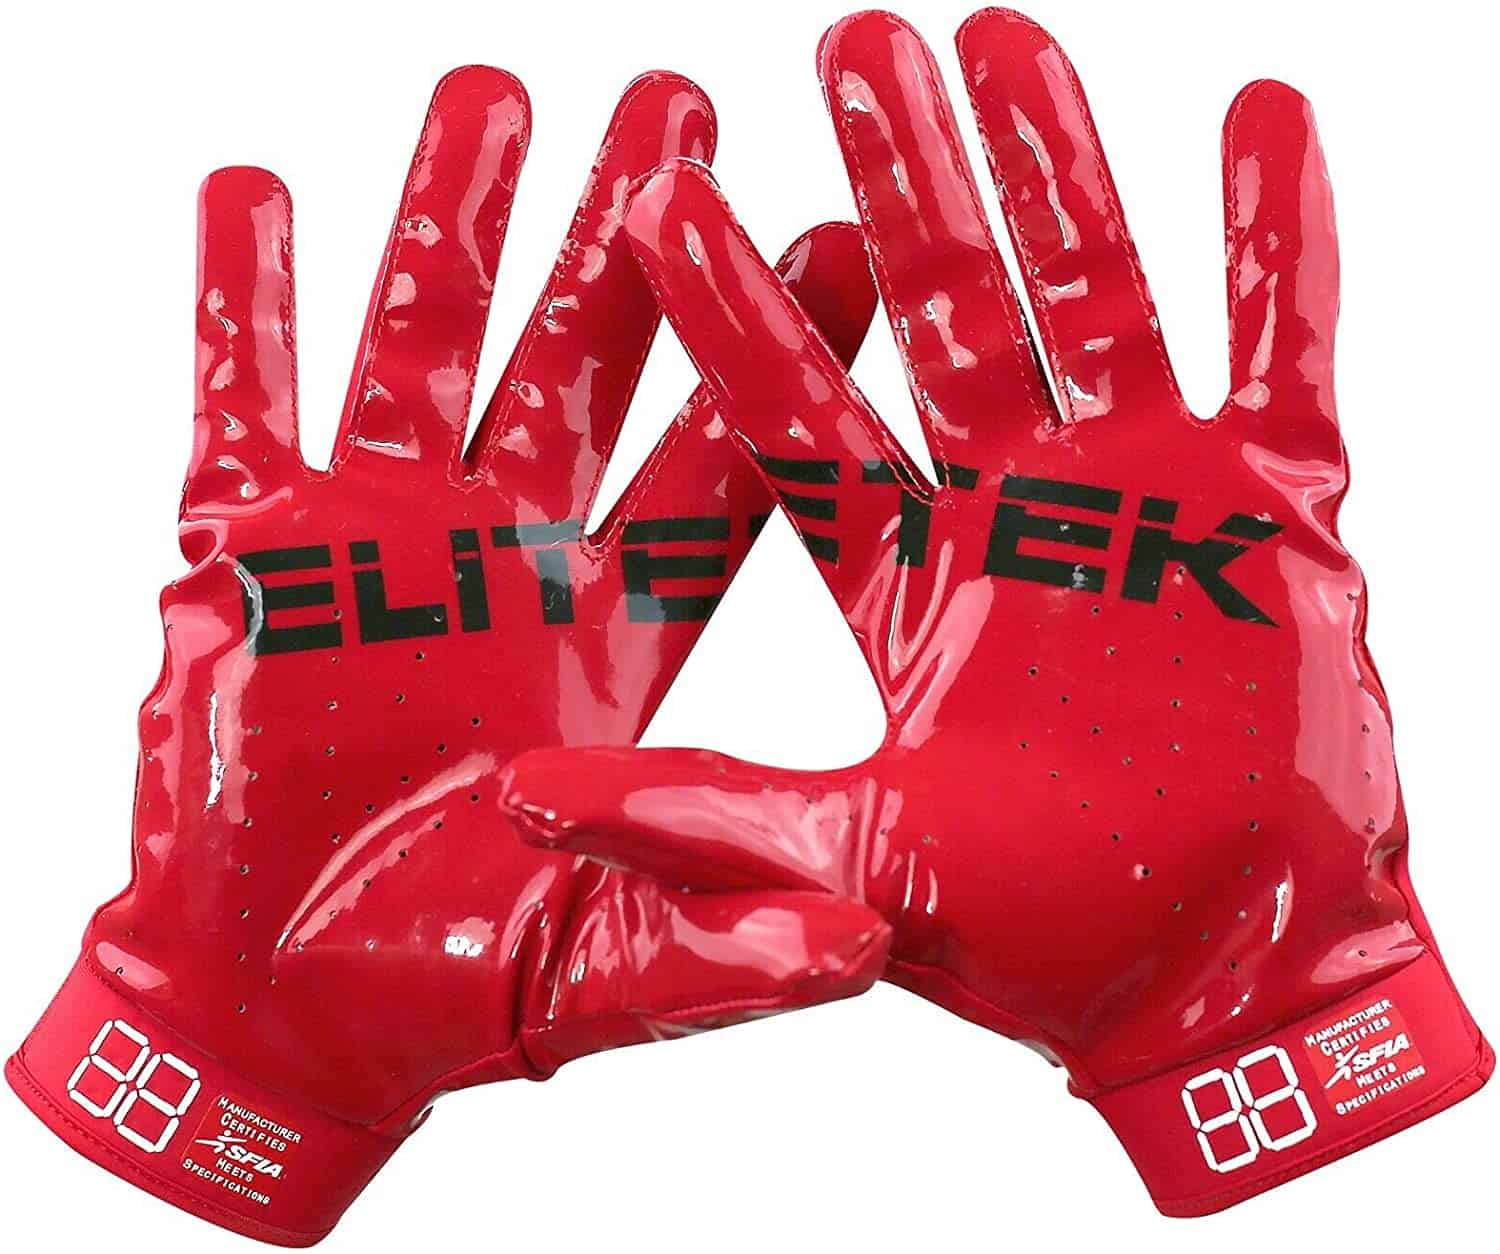 ถุงมืออเมริกันฟุตบอลที่ปรับแต่งได้ดีที่สุด - EliteTek RG-14 ถุงมือฟุตบอลกระชับแน่นพิเศษ